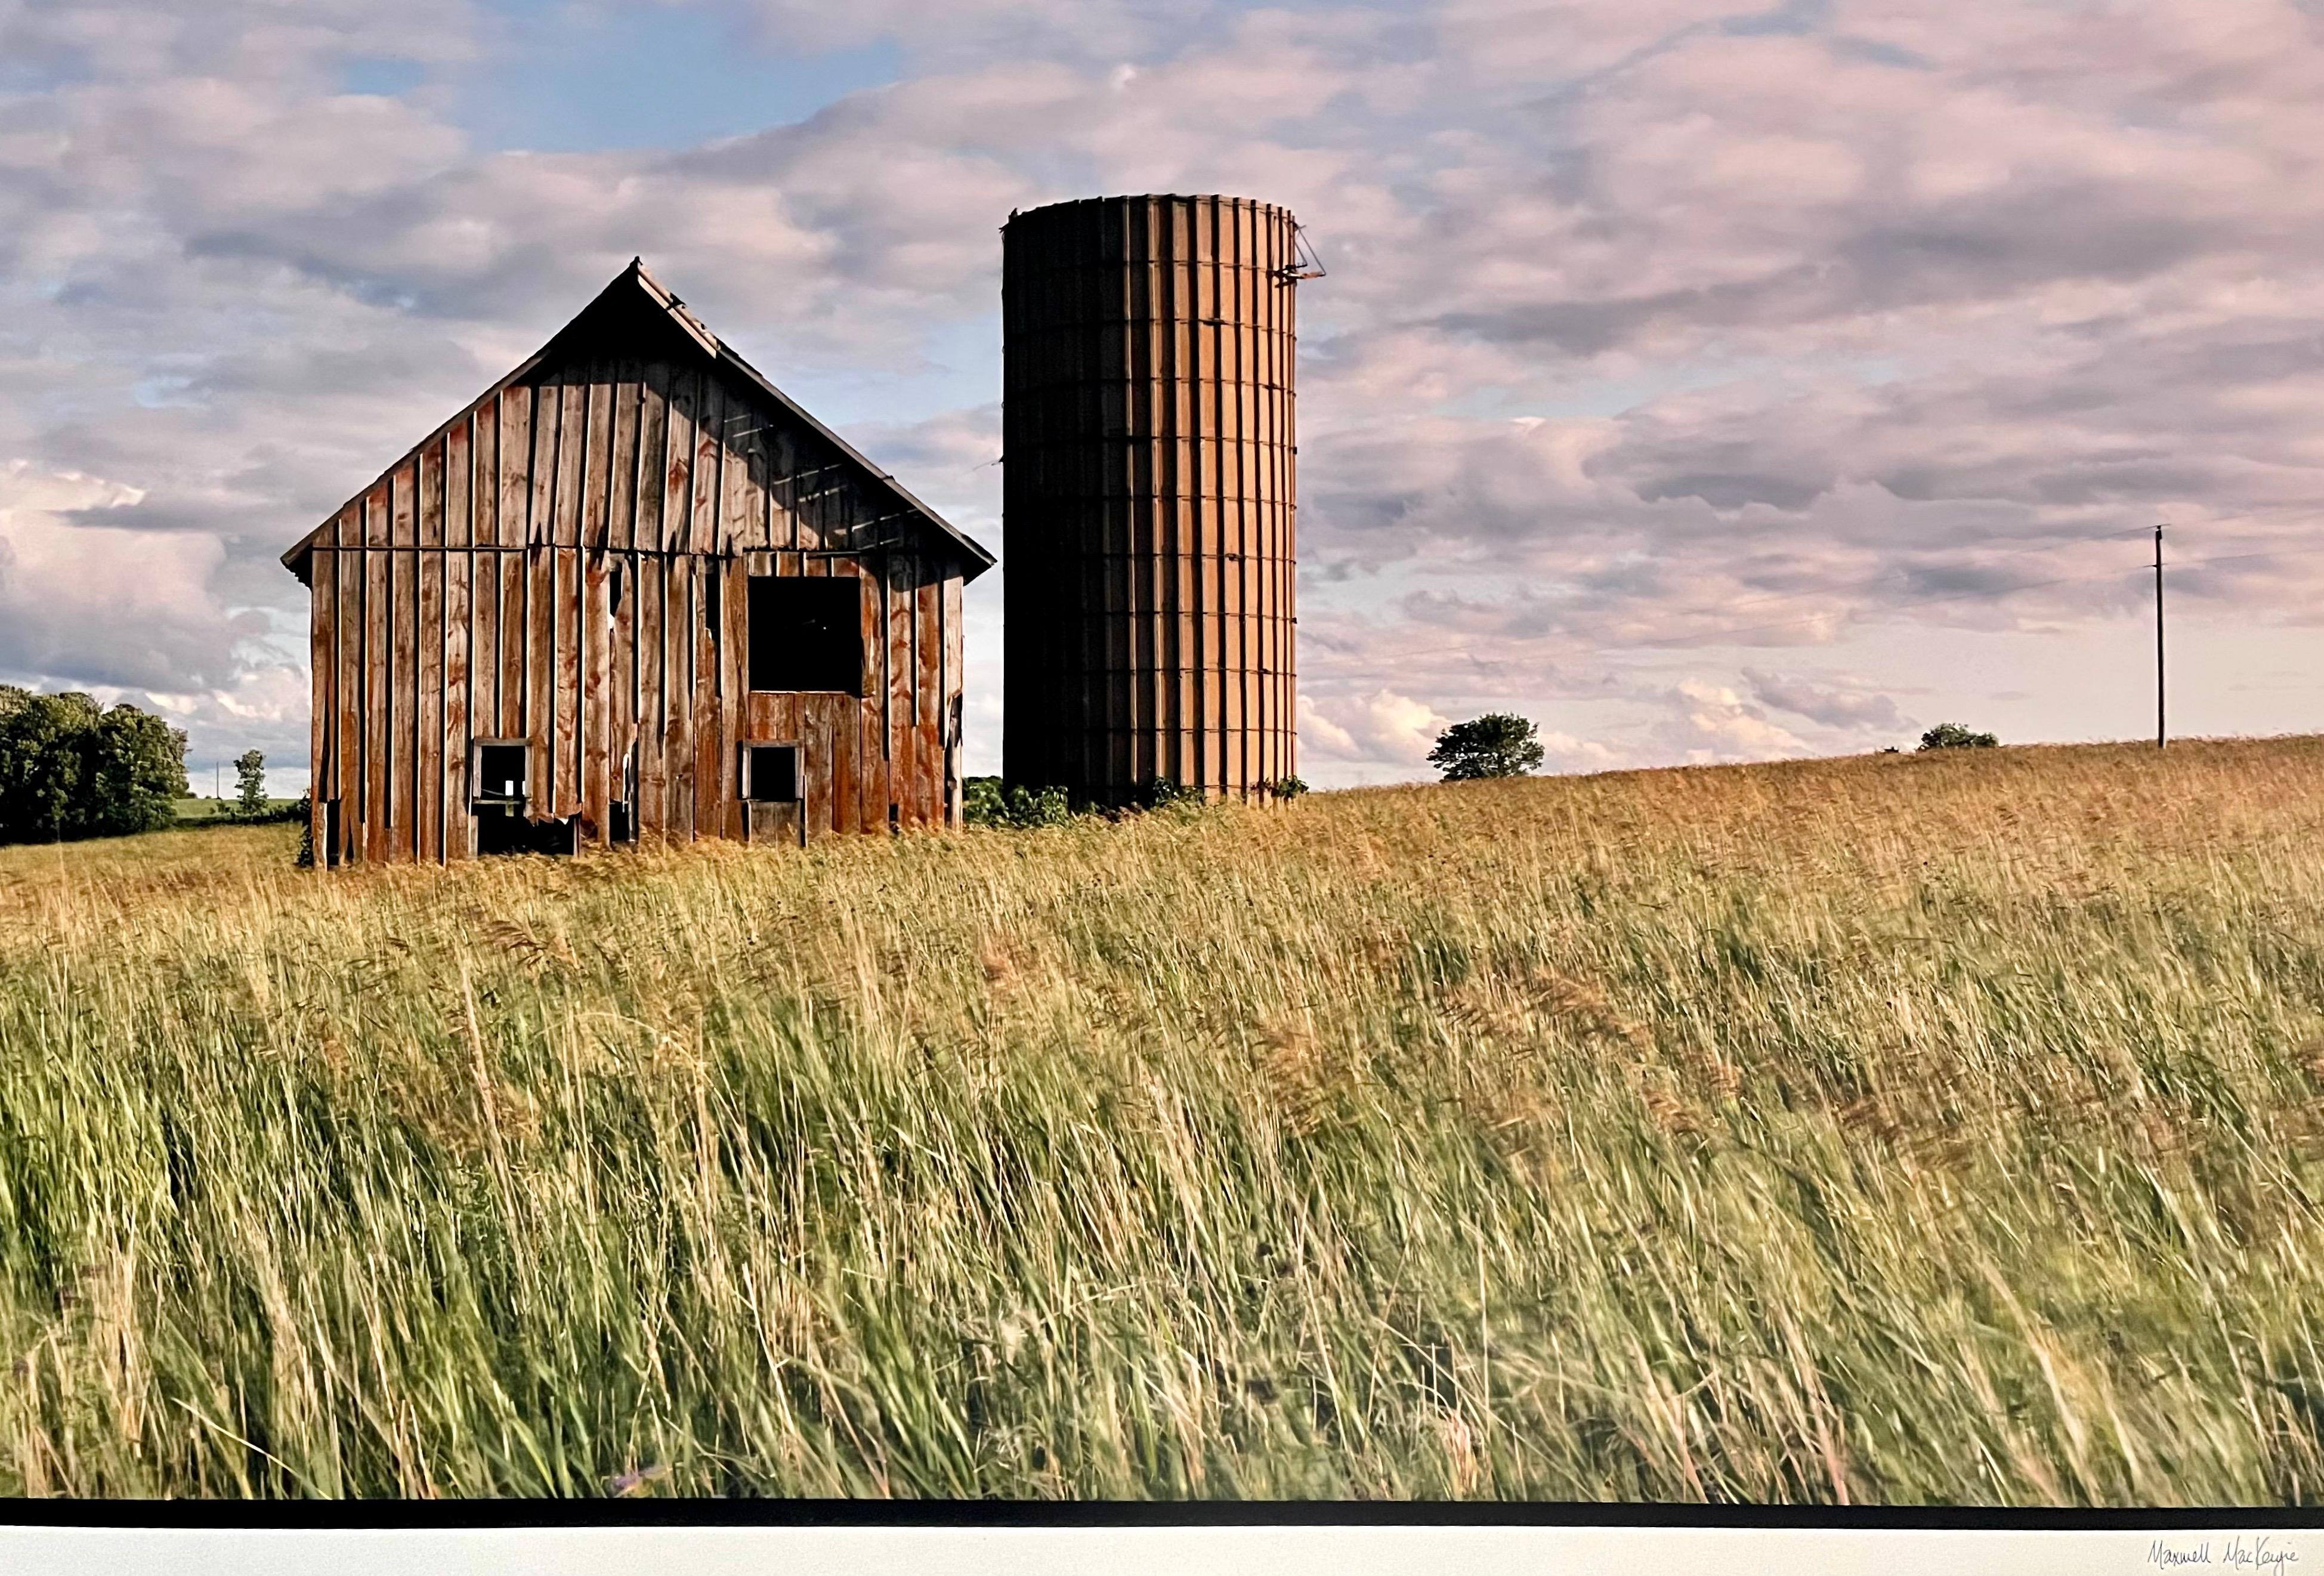 Gehöft der Gemeinde Amor, Sommer
Fabelhafte amerikanische Landschaftsfotografie einer ländlichen Landschaftsszene. 
aus kleiner handsignierter Auflage von 20 Stück
Chromogener Großformatdruck auf Kodak Professional Papier
Die Blätter sind etwa 30 x